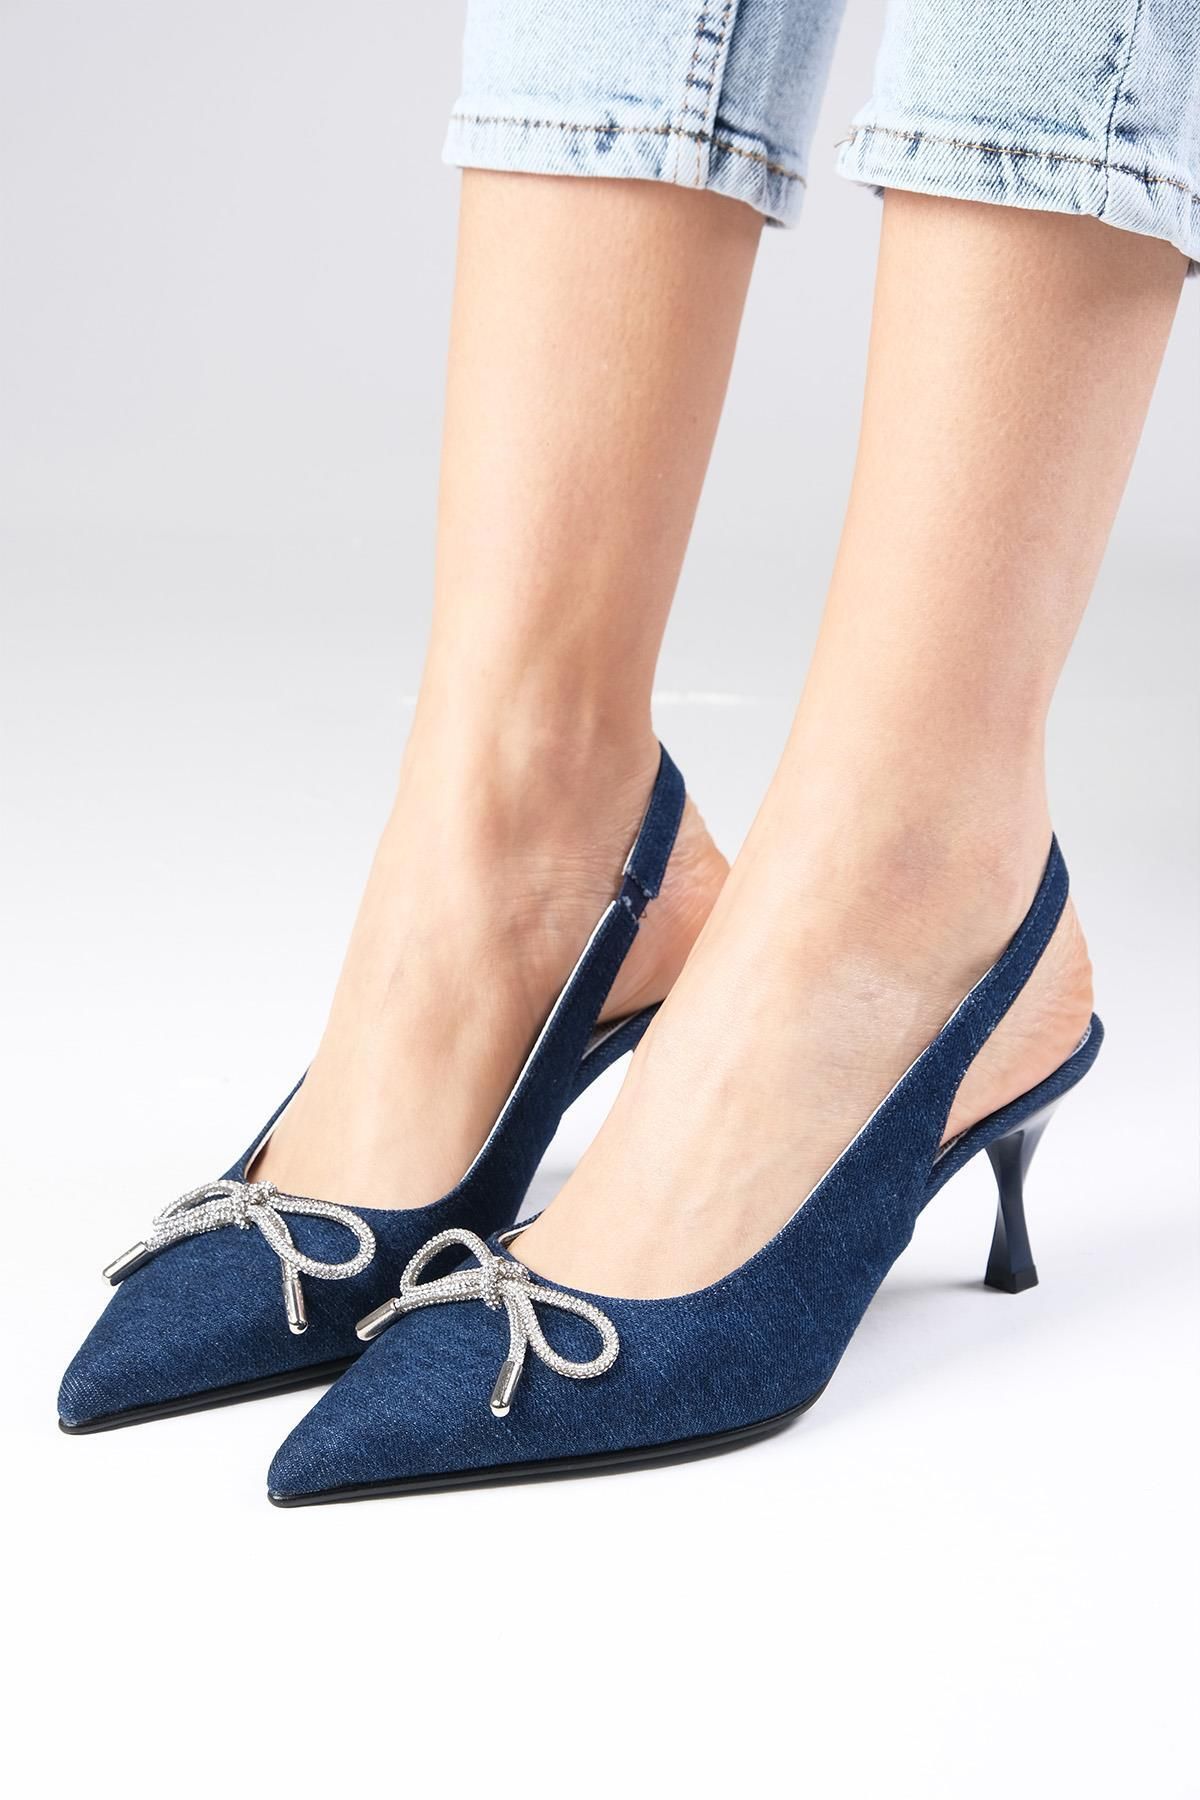 Mio Gusto Alexis Lacivert Renk Denim Kumaş Arkası Açık Taş Fiyonklu Kadın Topuklu Ayakkabı